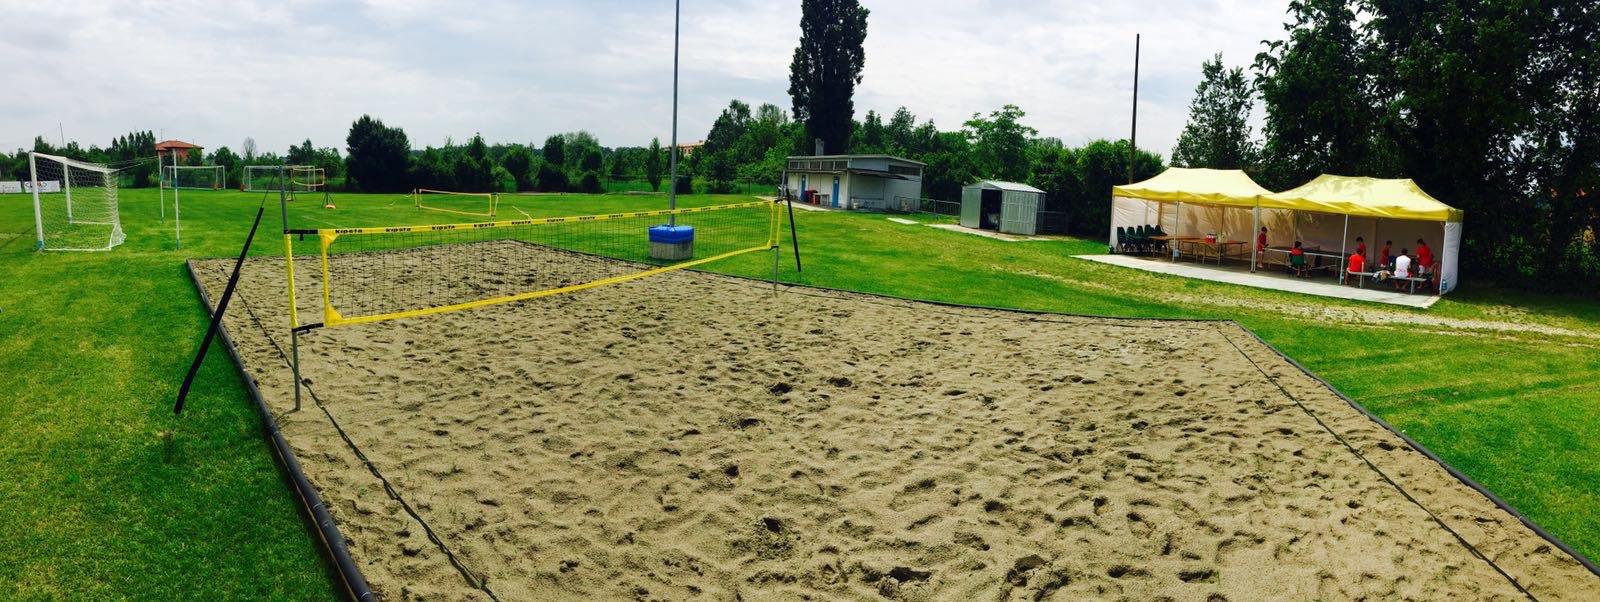 I nostri campi: Beach volley/tennis calcio tennis 